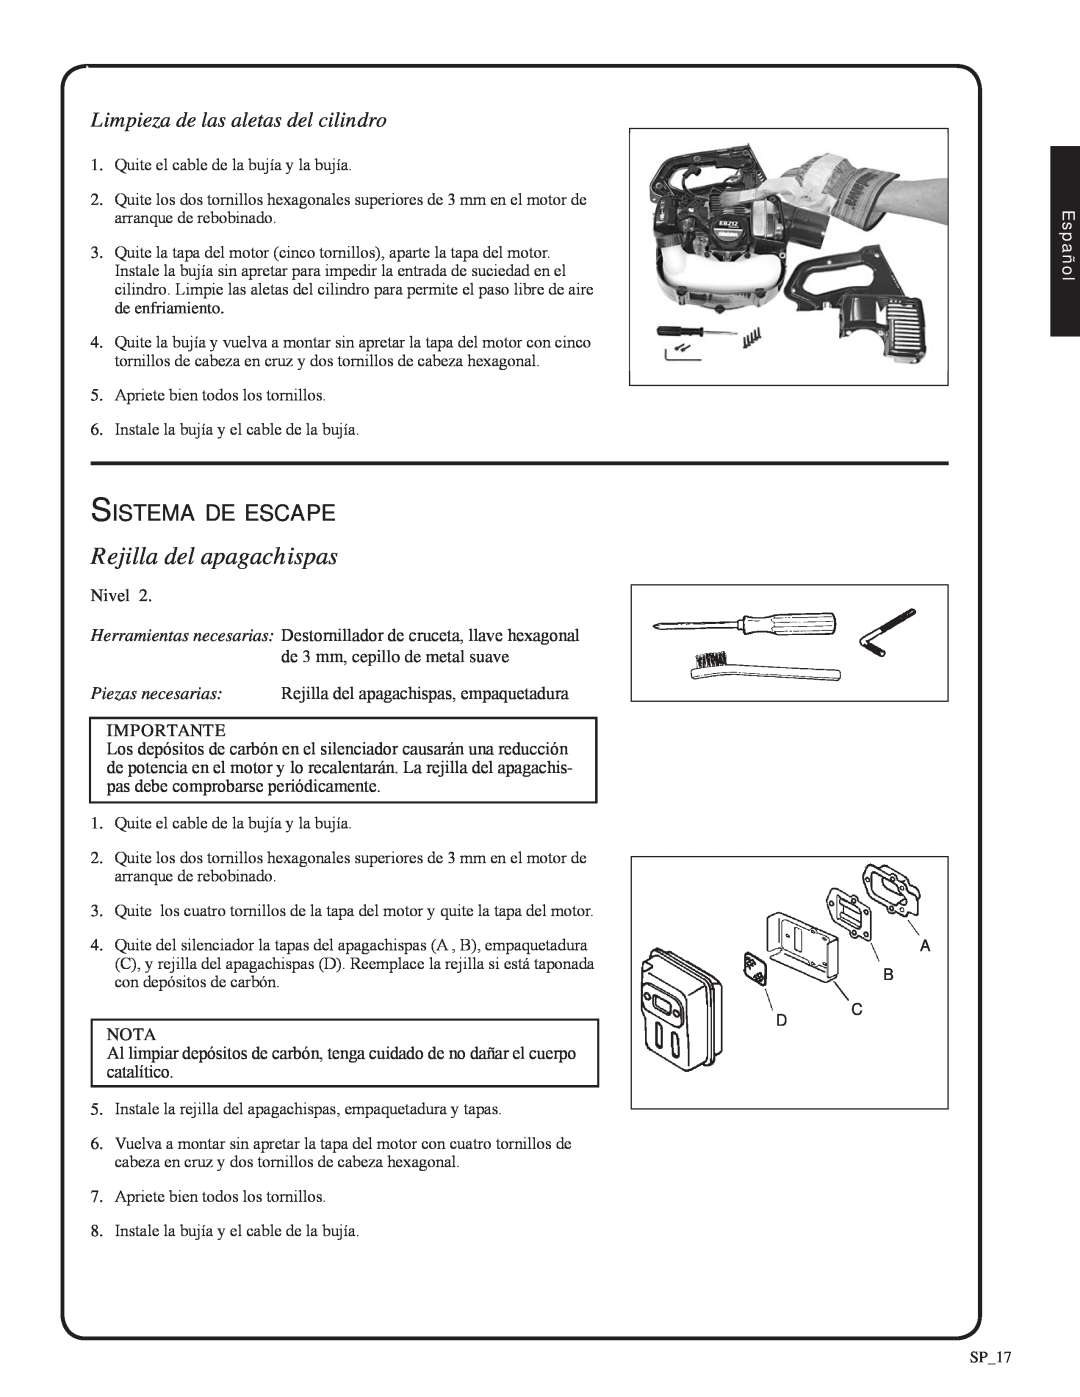 Shindaiwa 82051, EB212 manual Rejilla del apagachispas, Sistema de escape, Limpieza de las aletas del cilindro, Español 